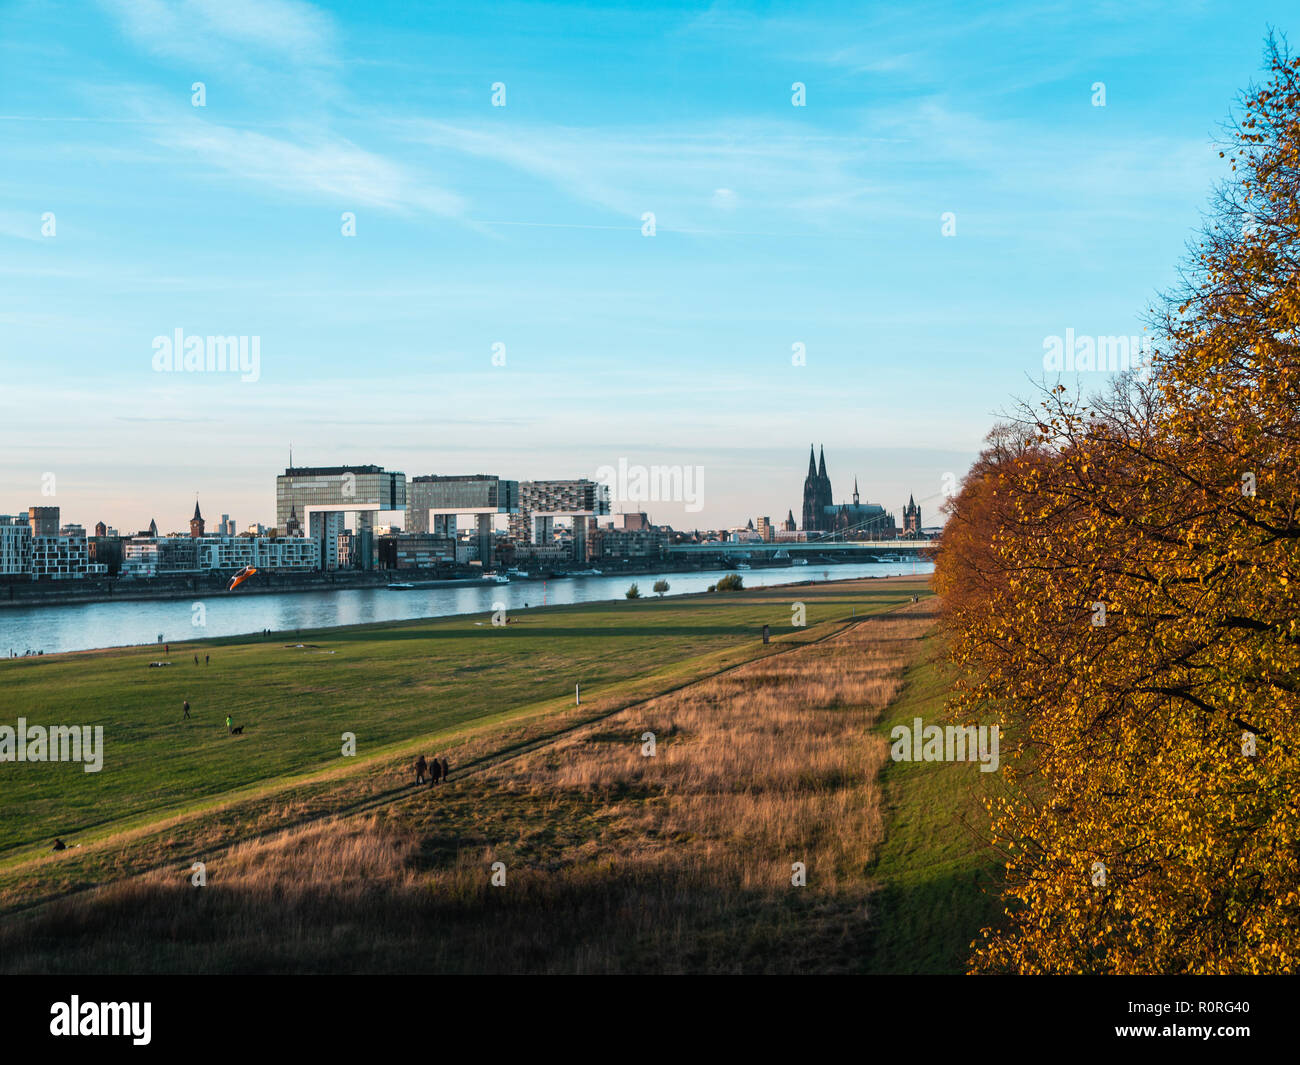 L'automne à Cologne : rues de la région de Cologne, Allemagne avec cathédrale et d'autres repères - Poller Wiesen en premier plan Banque D'Images